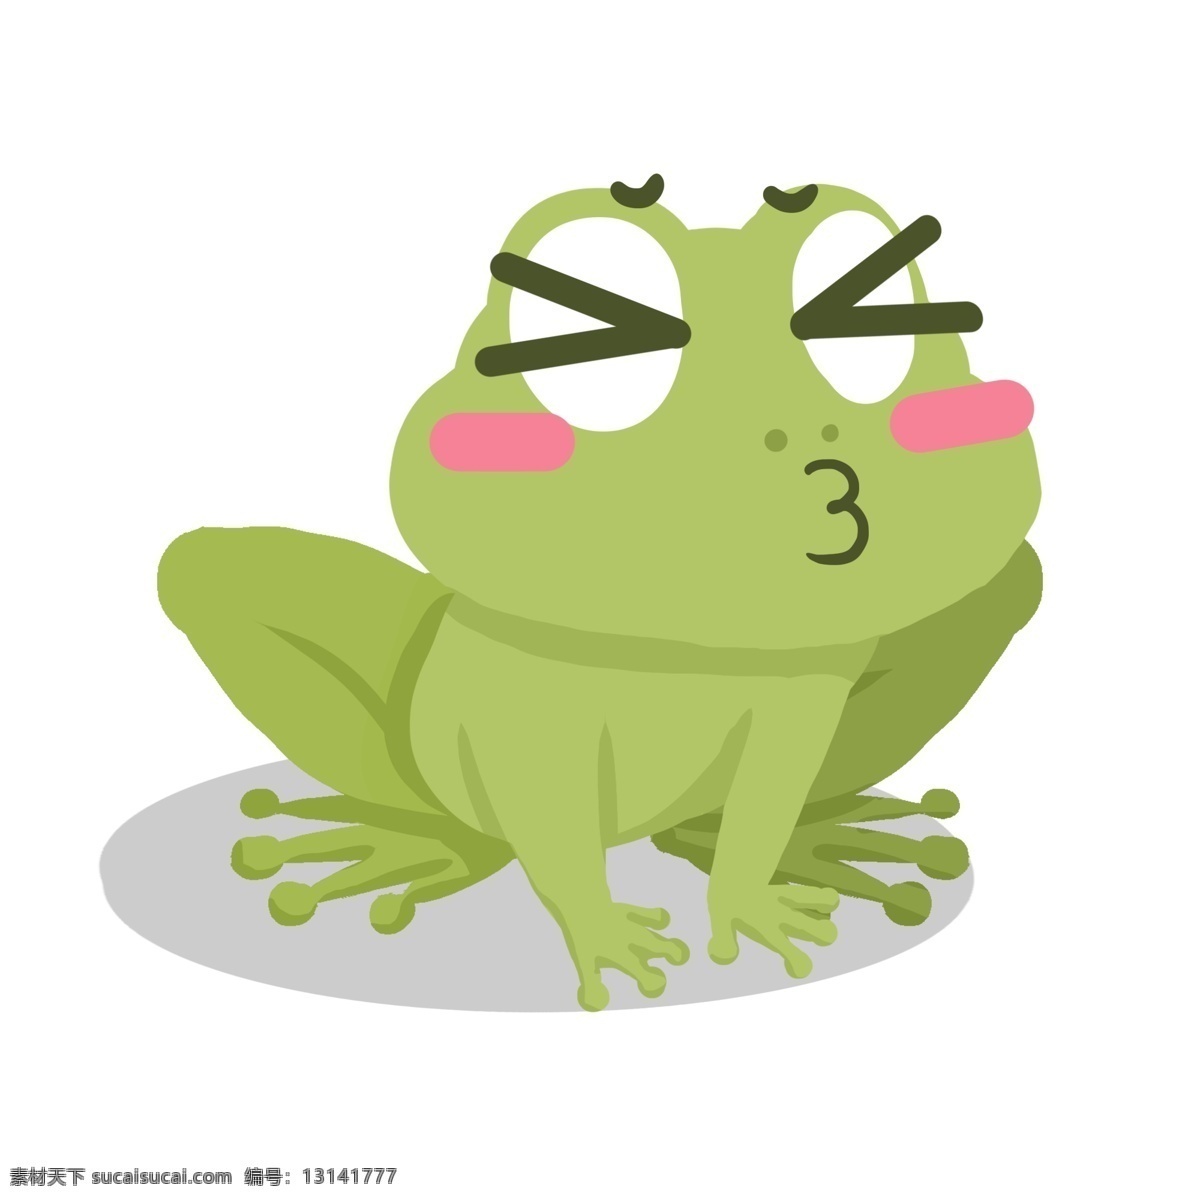 亲亲表情包 青蛙 青蛙表情包 绿色